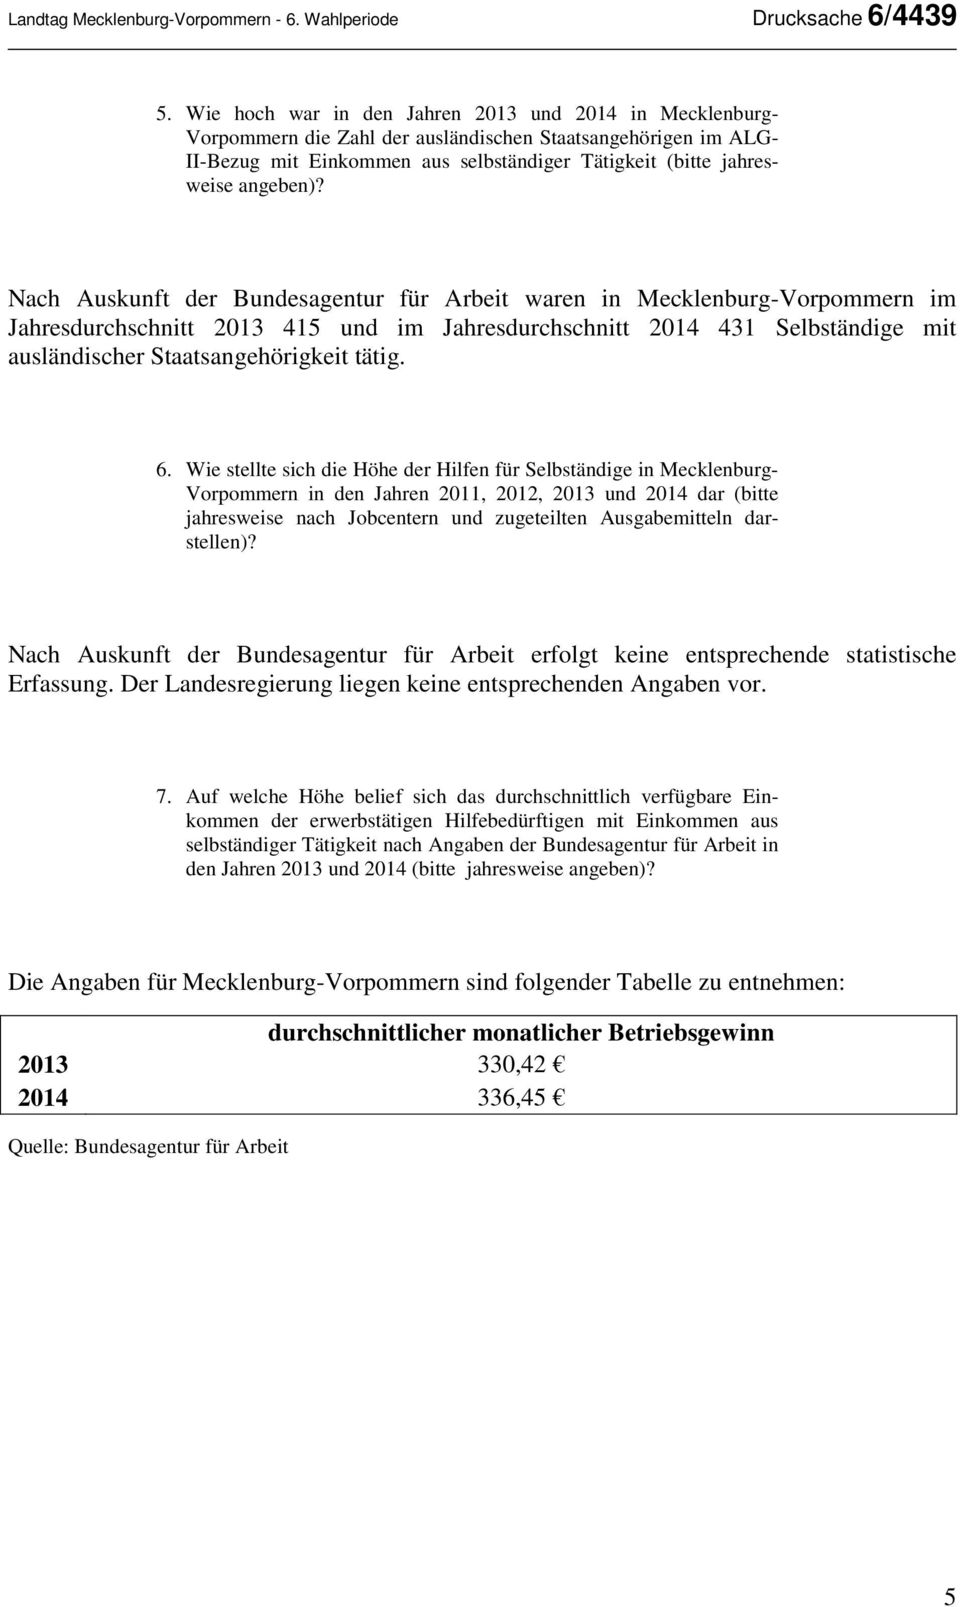 Nach Auskunft der Bundesagentur für Arbeit waren in Mecklenburg-Vorpommern im Jahresdurchschnitt 2013 415 und im Jahresdurchschnitt 2014 431 Selbständige mit ausländischer Staatsangehörigkeit tätig.